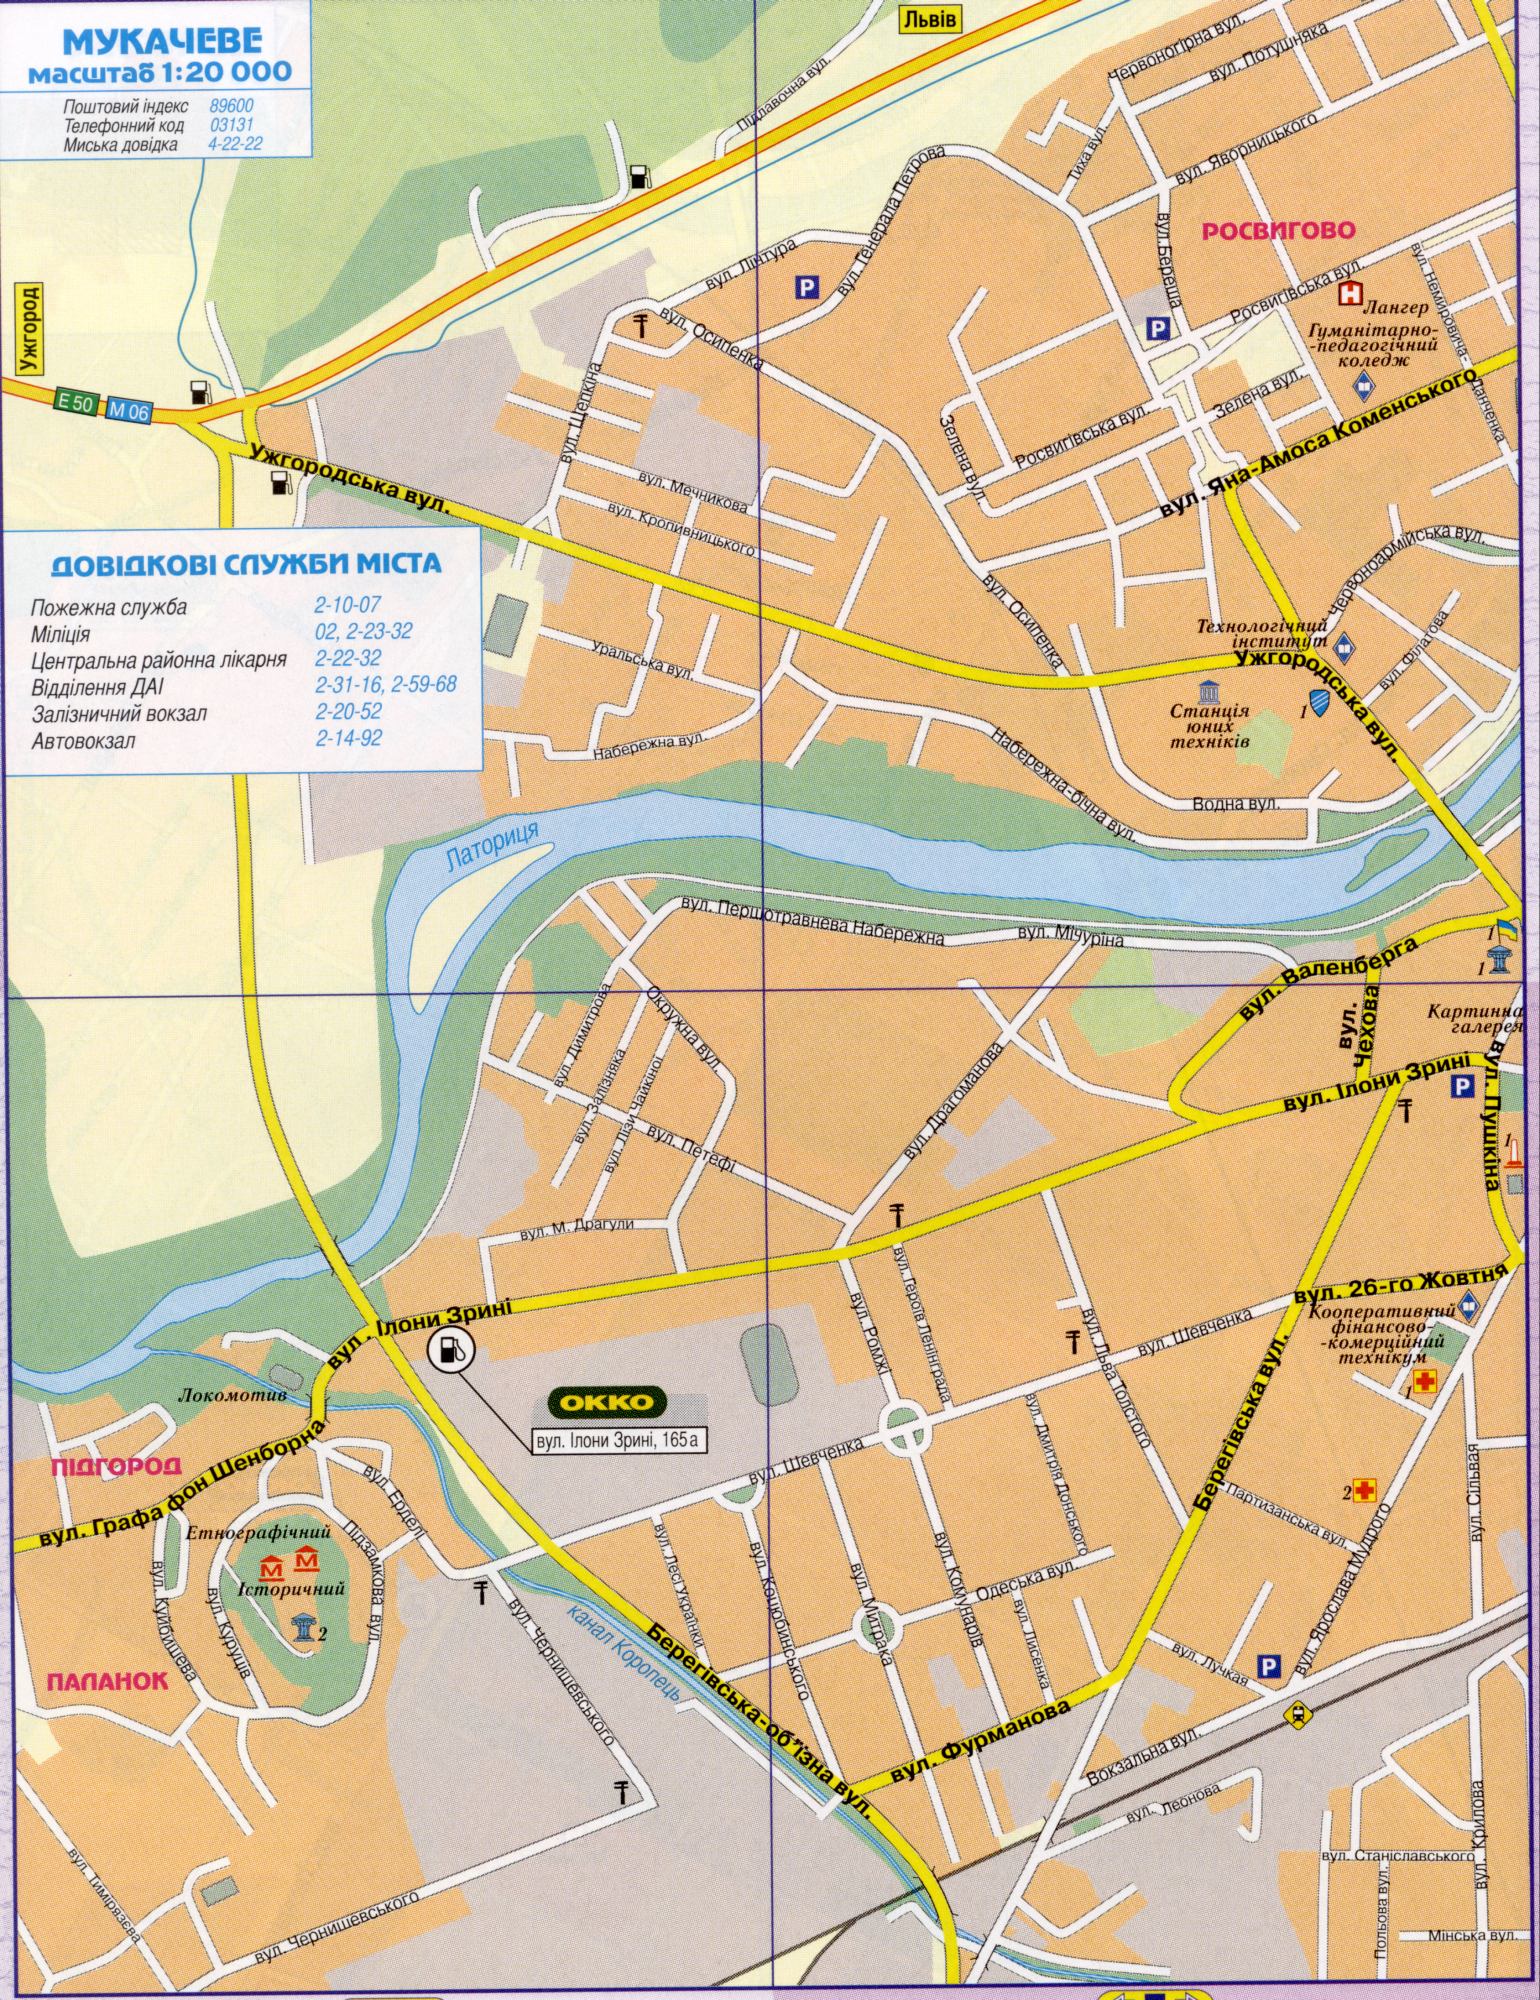 Карта Мукачева подробная. Закарпатская обл Украины, город Мукачево, автомобильные дороги, масштаб - в 1 см 200 метров. Скачать бесплатно